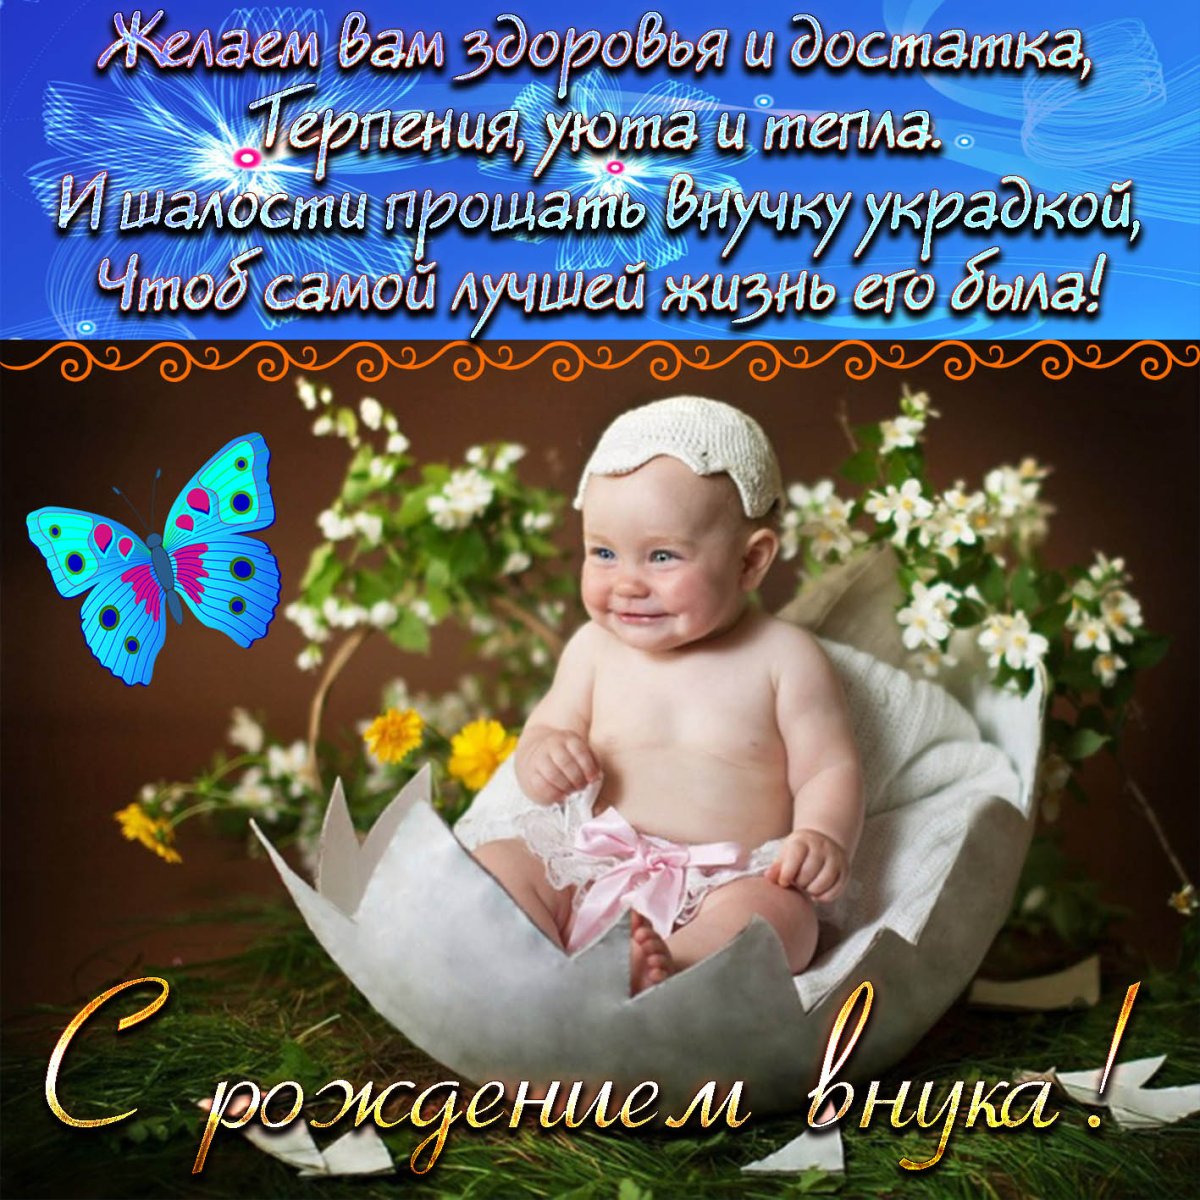 Поздравления бабушке на татарском языке